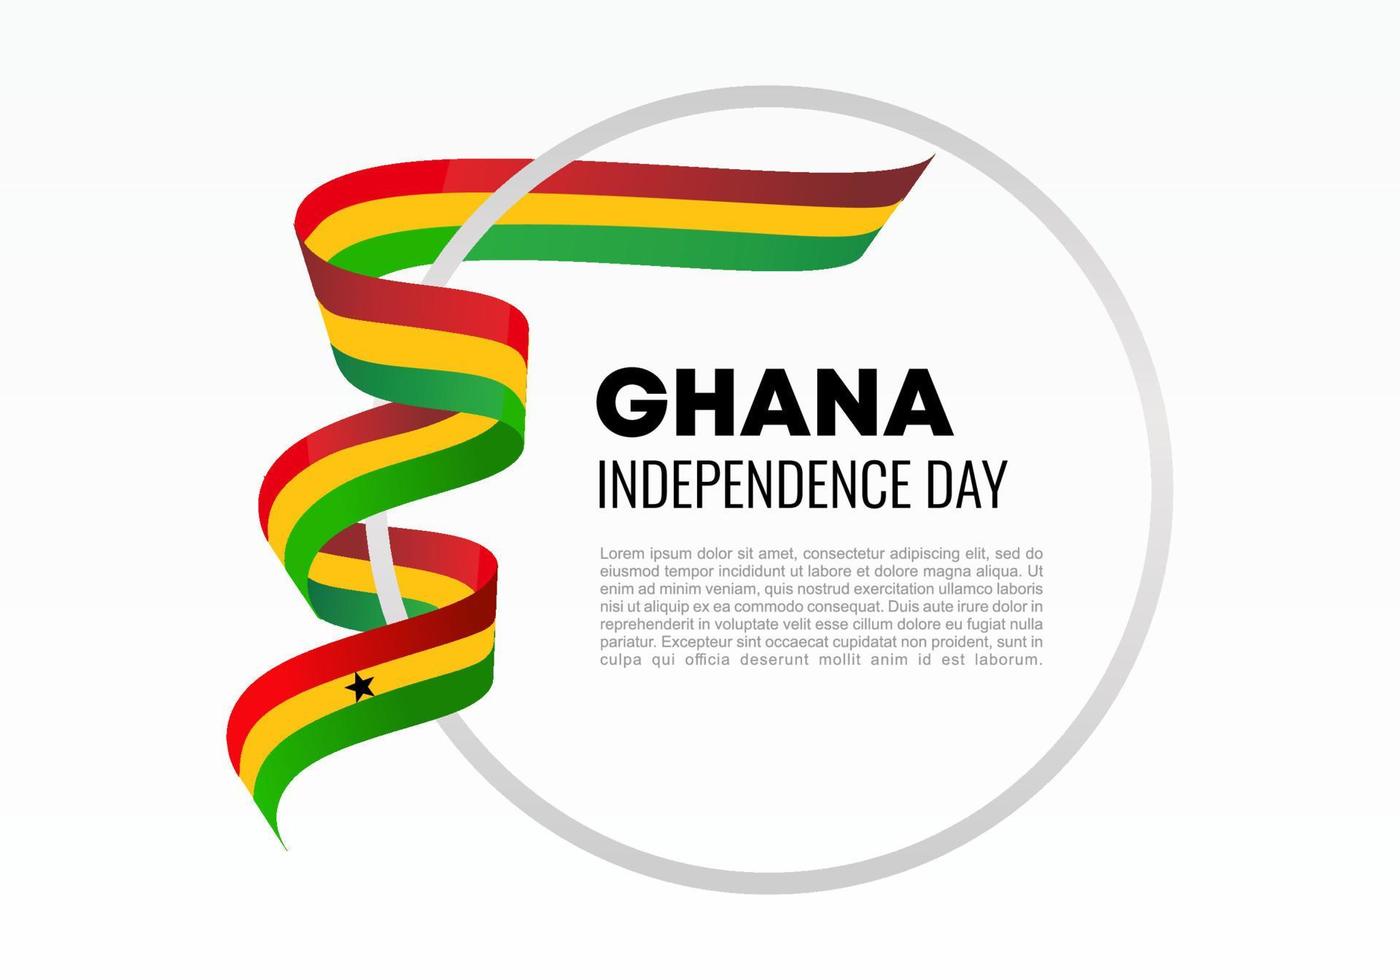 ghana självständighetsdagen bakgrund den 6 mars. vektor